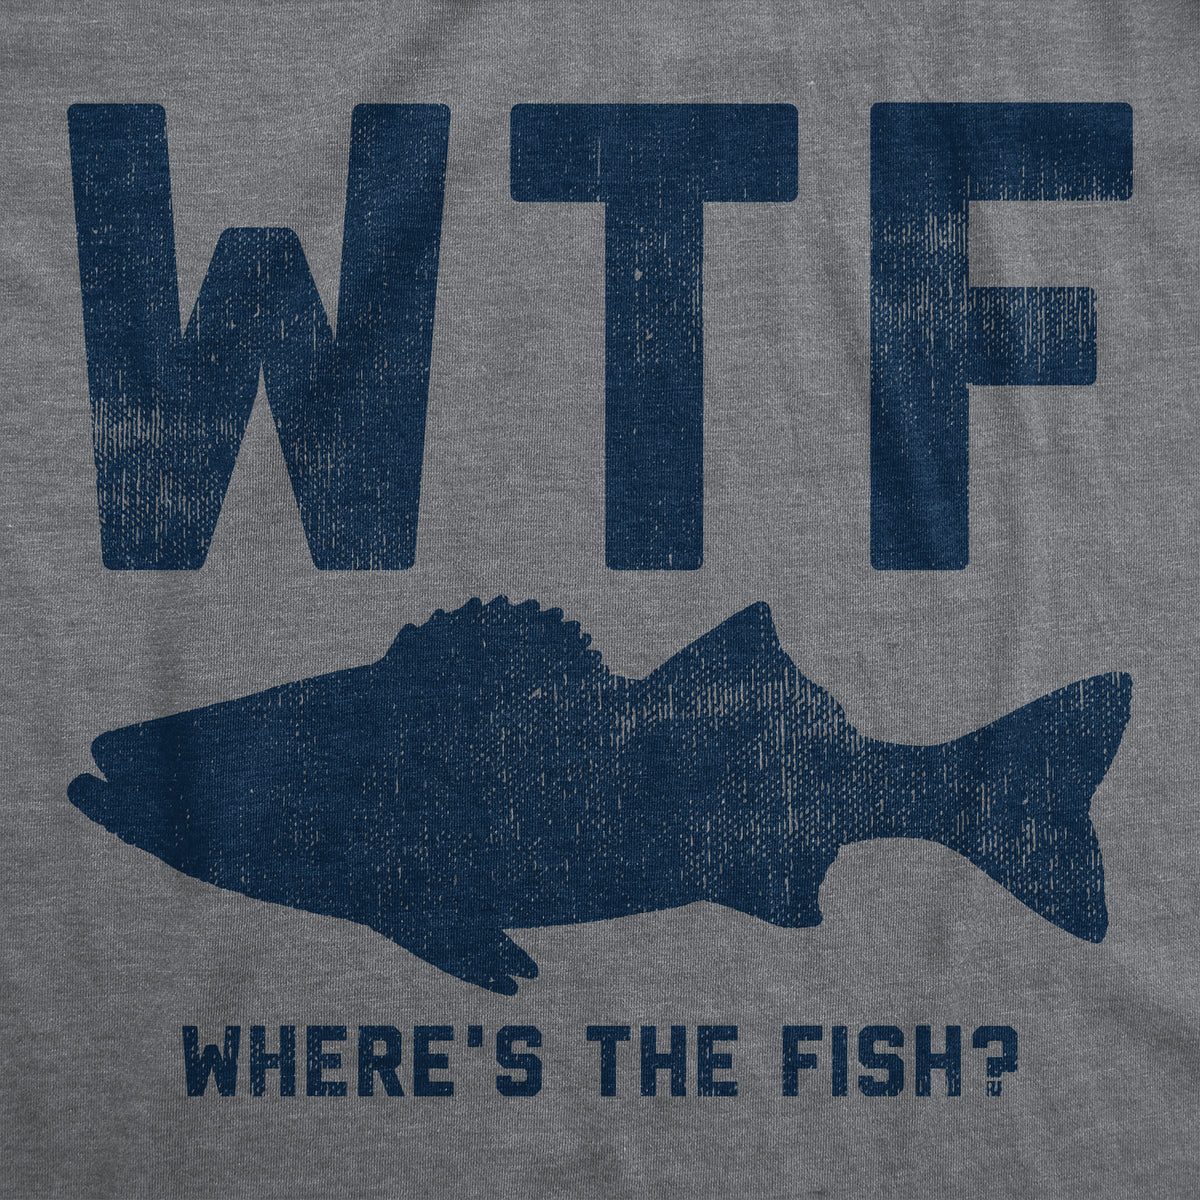 You & Me Fishing in the Dark, Fish Shirt, Men's Fishing Shirt, Funny Fishing  Shirt, Fishing Graphic T-shirt, Fisherman Shirt 